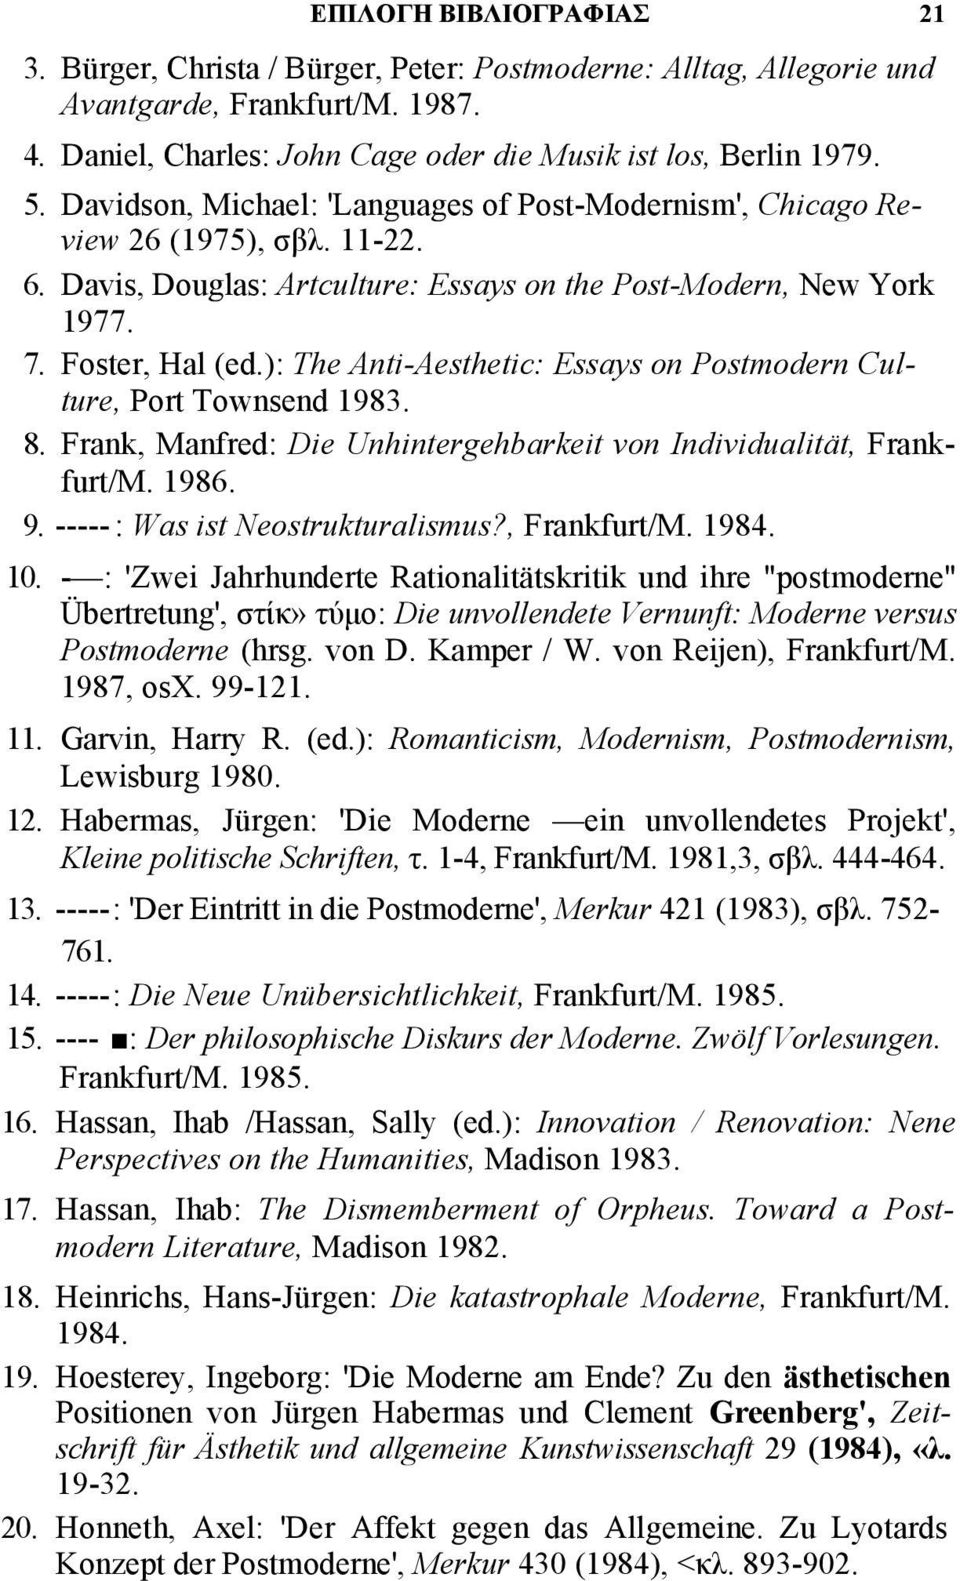 ): The Anti-Aesthetic: Essays on Postmodern Culture, Port Townsend 1983. 8. Frank, Manfred: Die Unhintergehbarkeit von Individualität, Frankfurt/M. 1986. 9. ----- : Was ist Neostrukturalismus?